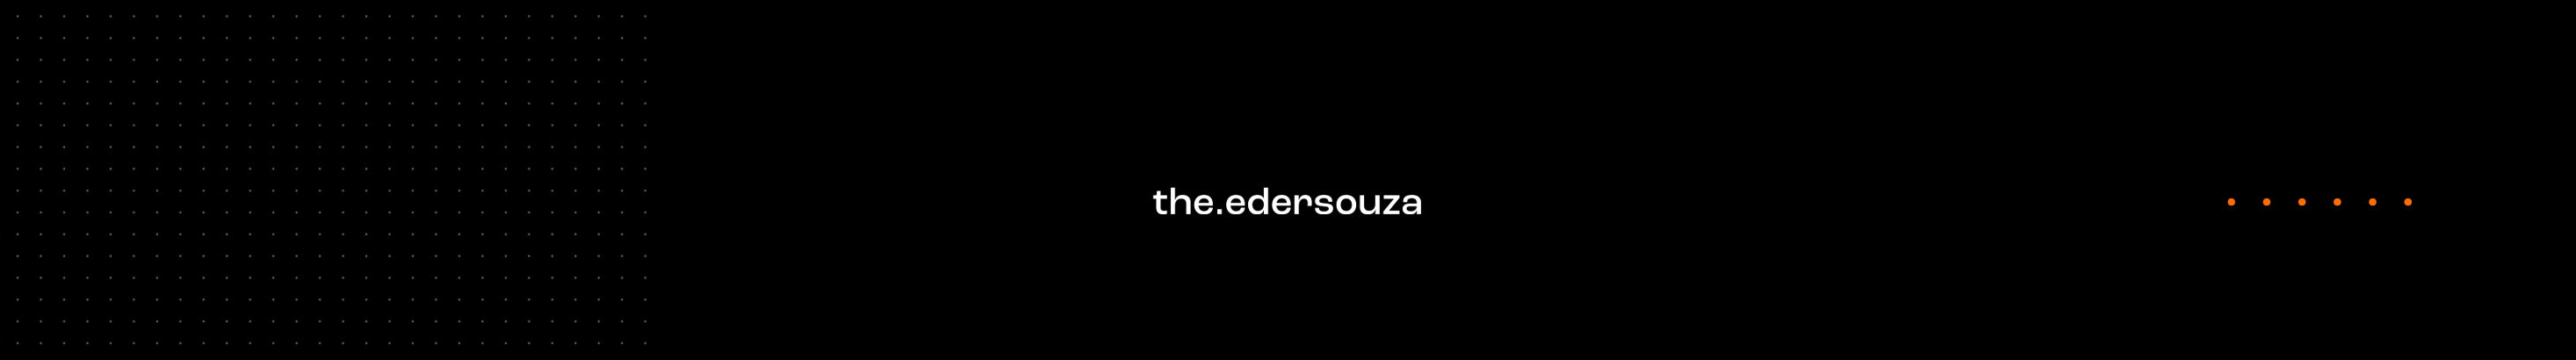 Eder Souza's profile banner